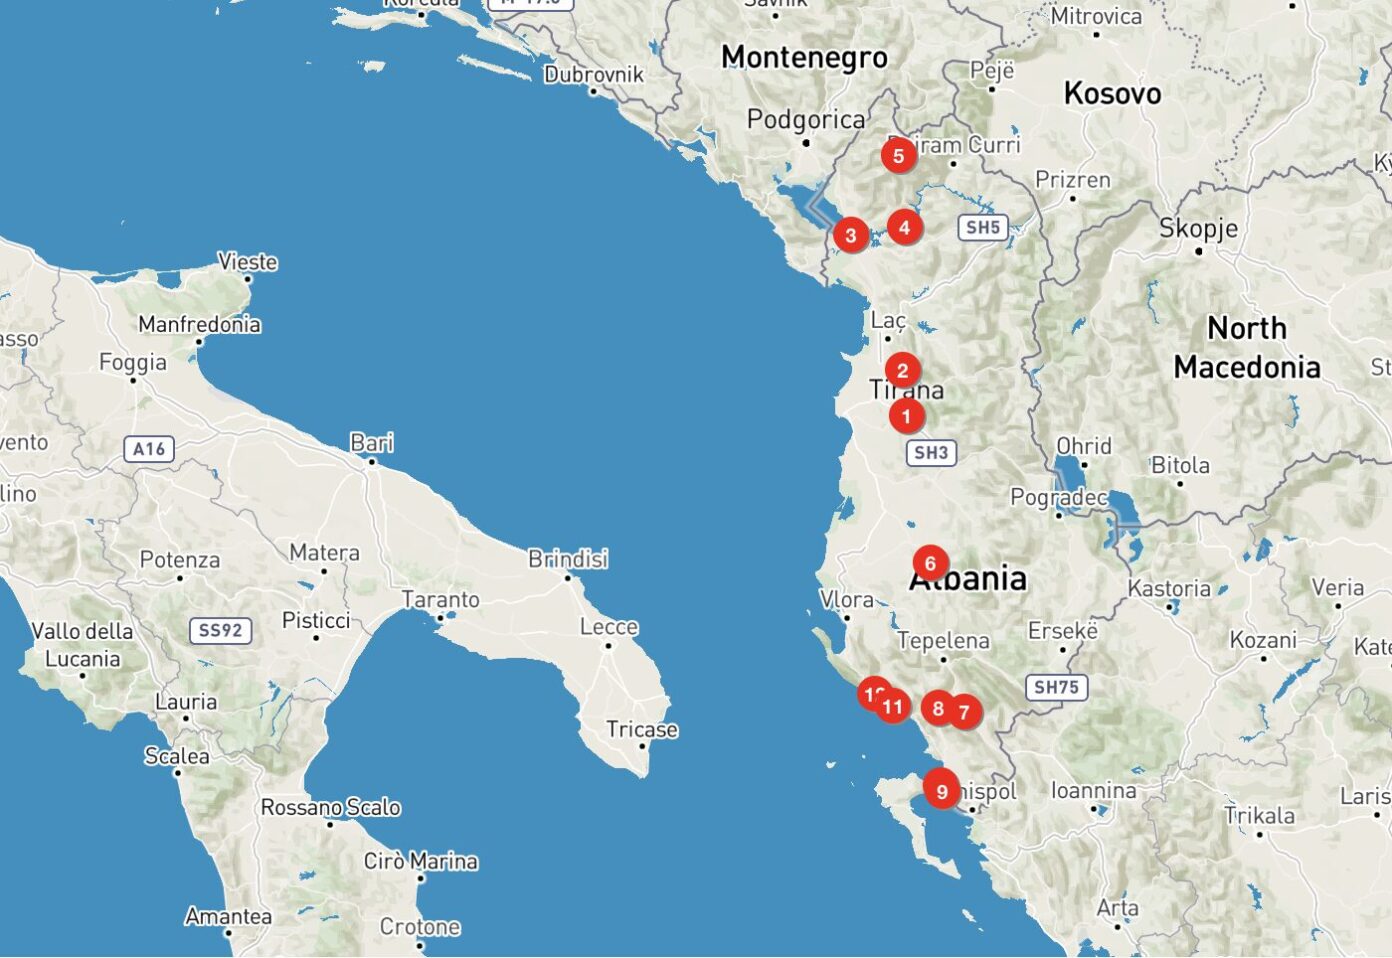 Mappa con i punti del mio itinerario in Albania